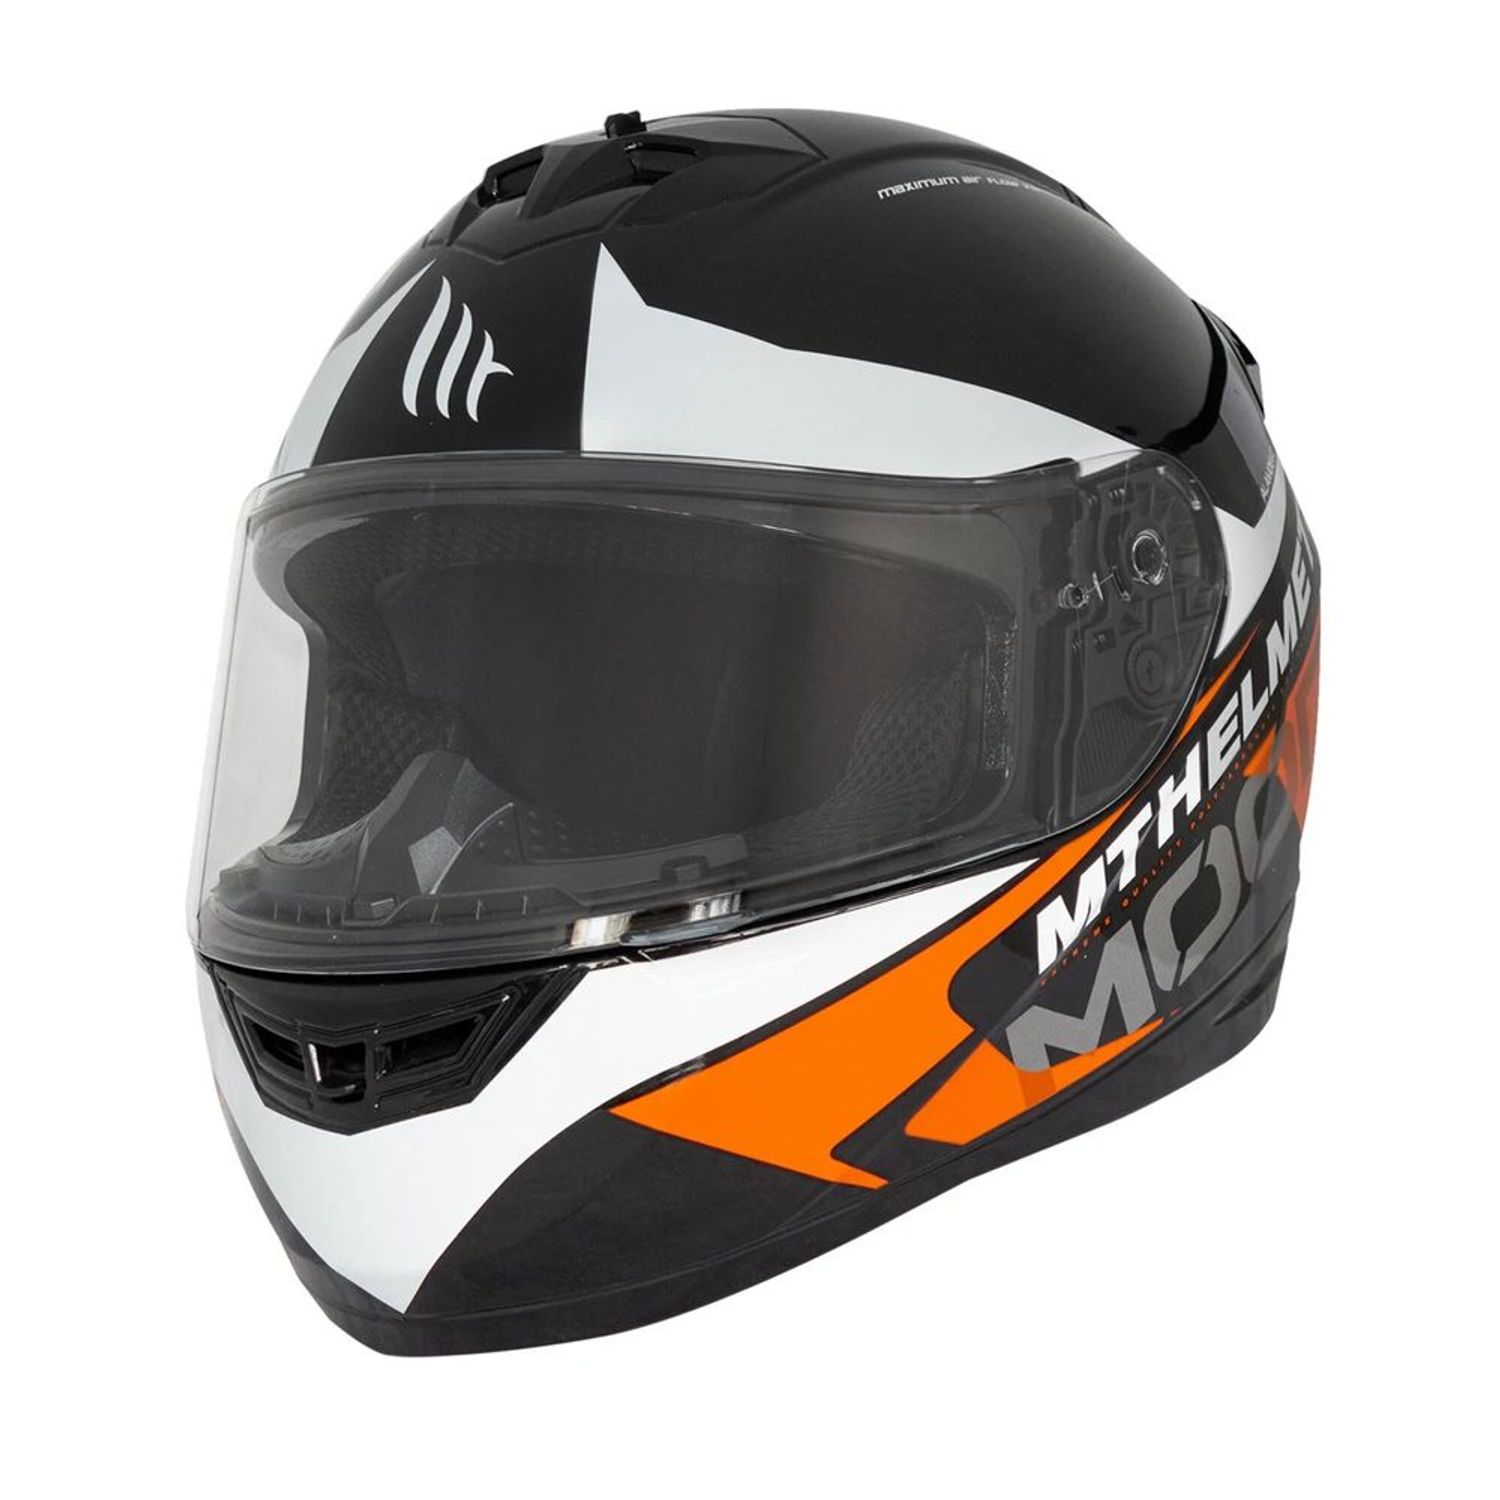 Compra Casco MT Helmets online. Mejor precio. Entrega 48h